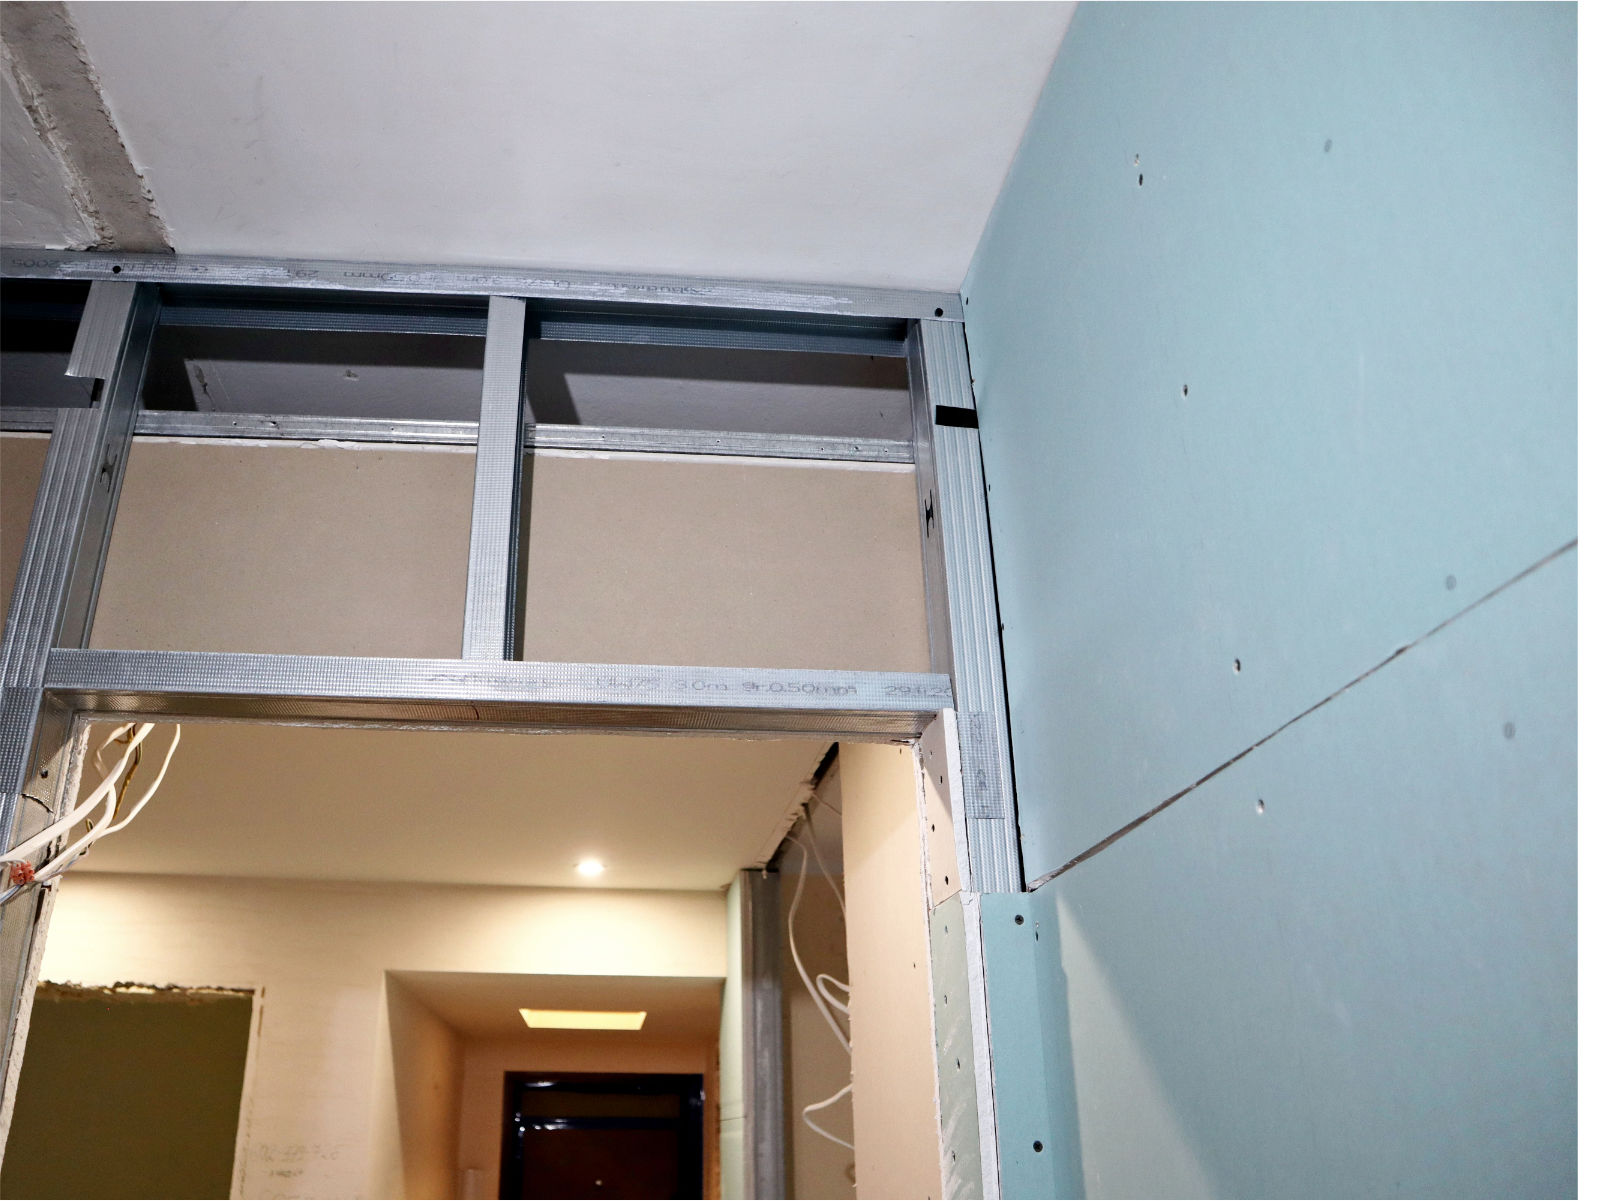 Nowy remont mieszkania - Modlin Twierdza - Etap płyty GK i wylewki na podłogach